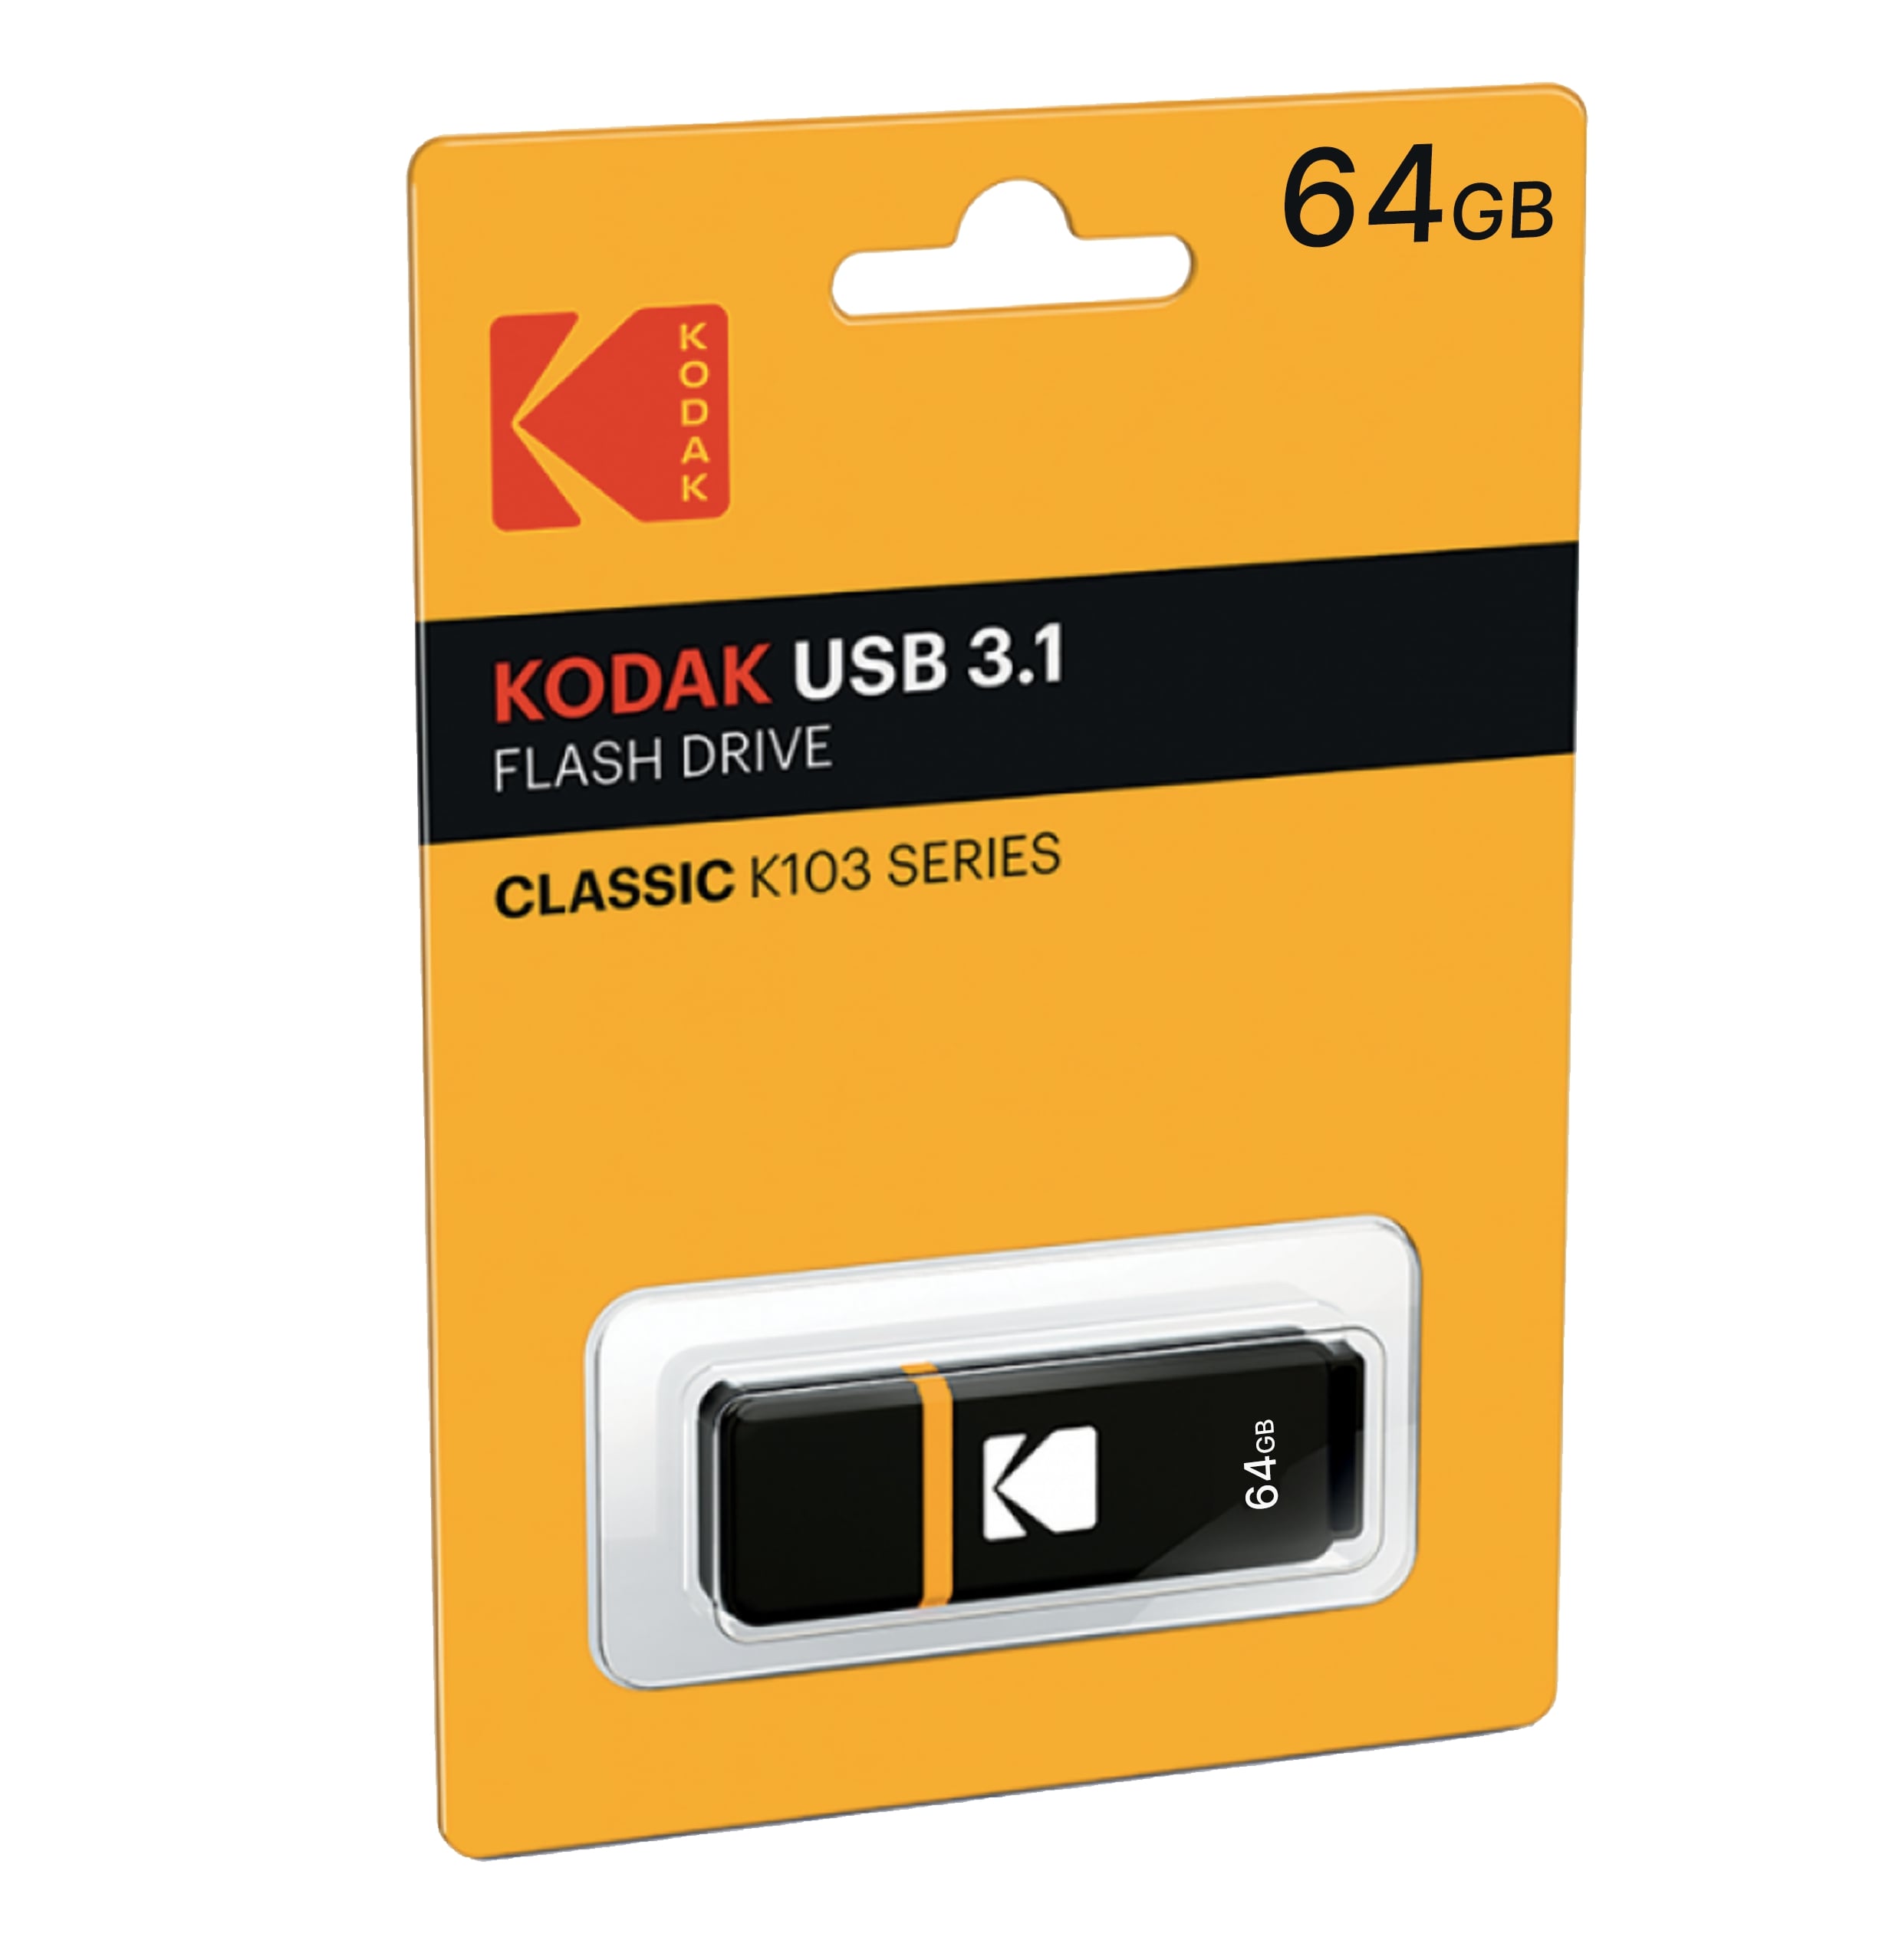 Kodak Usb 3.1 K100 64Gb Black